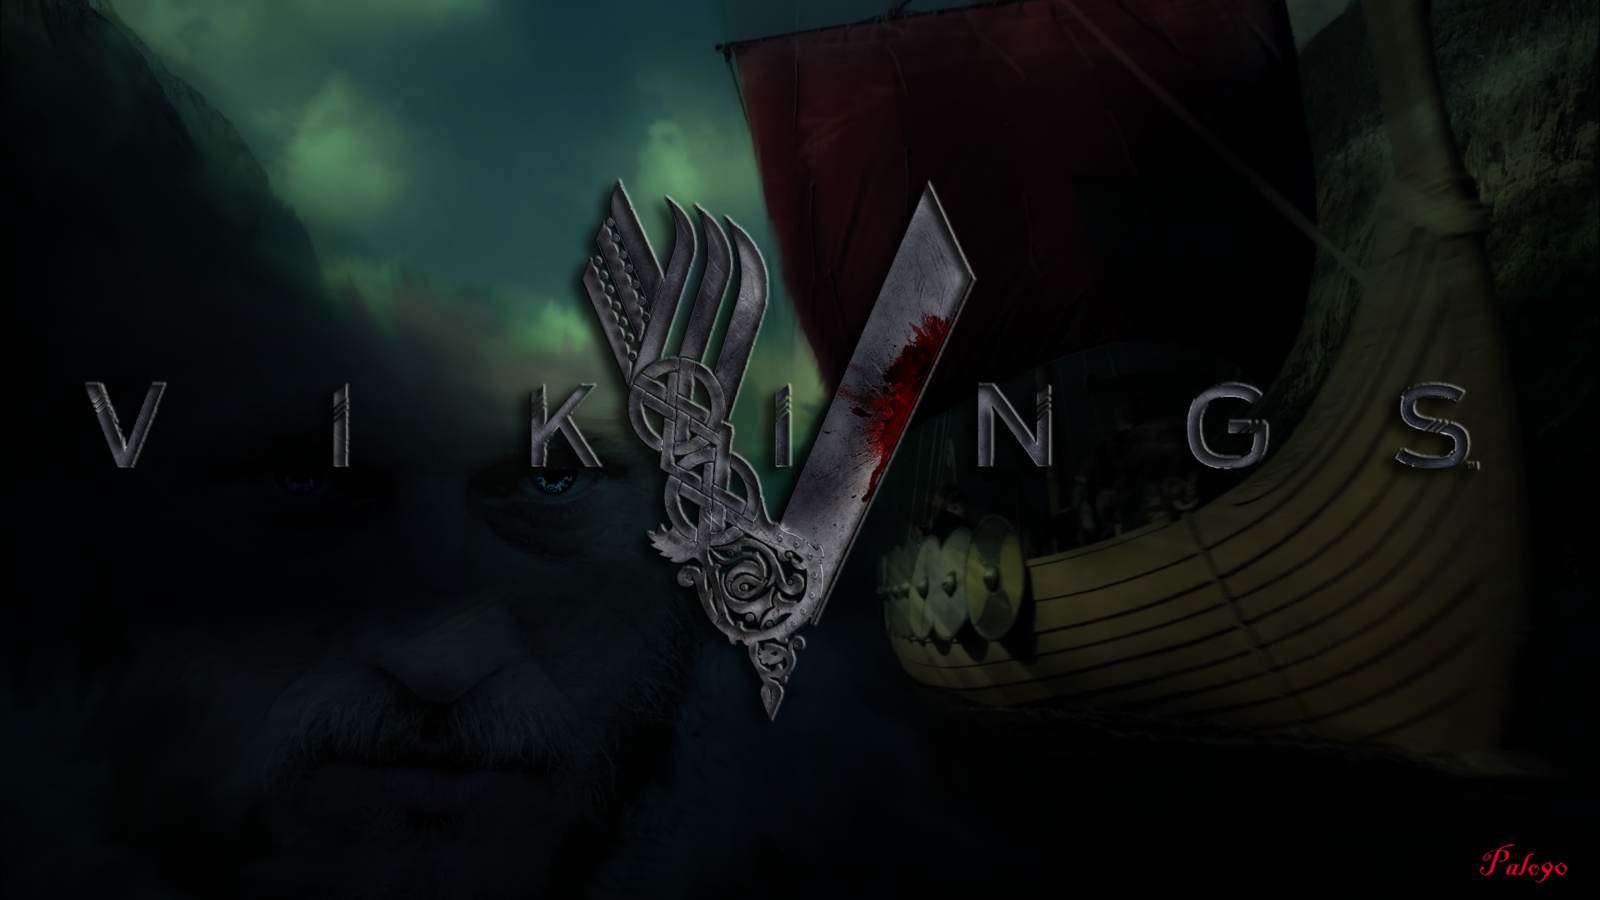 History Channel Vikings Wallpaper HD